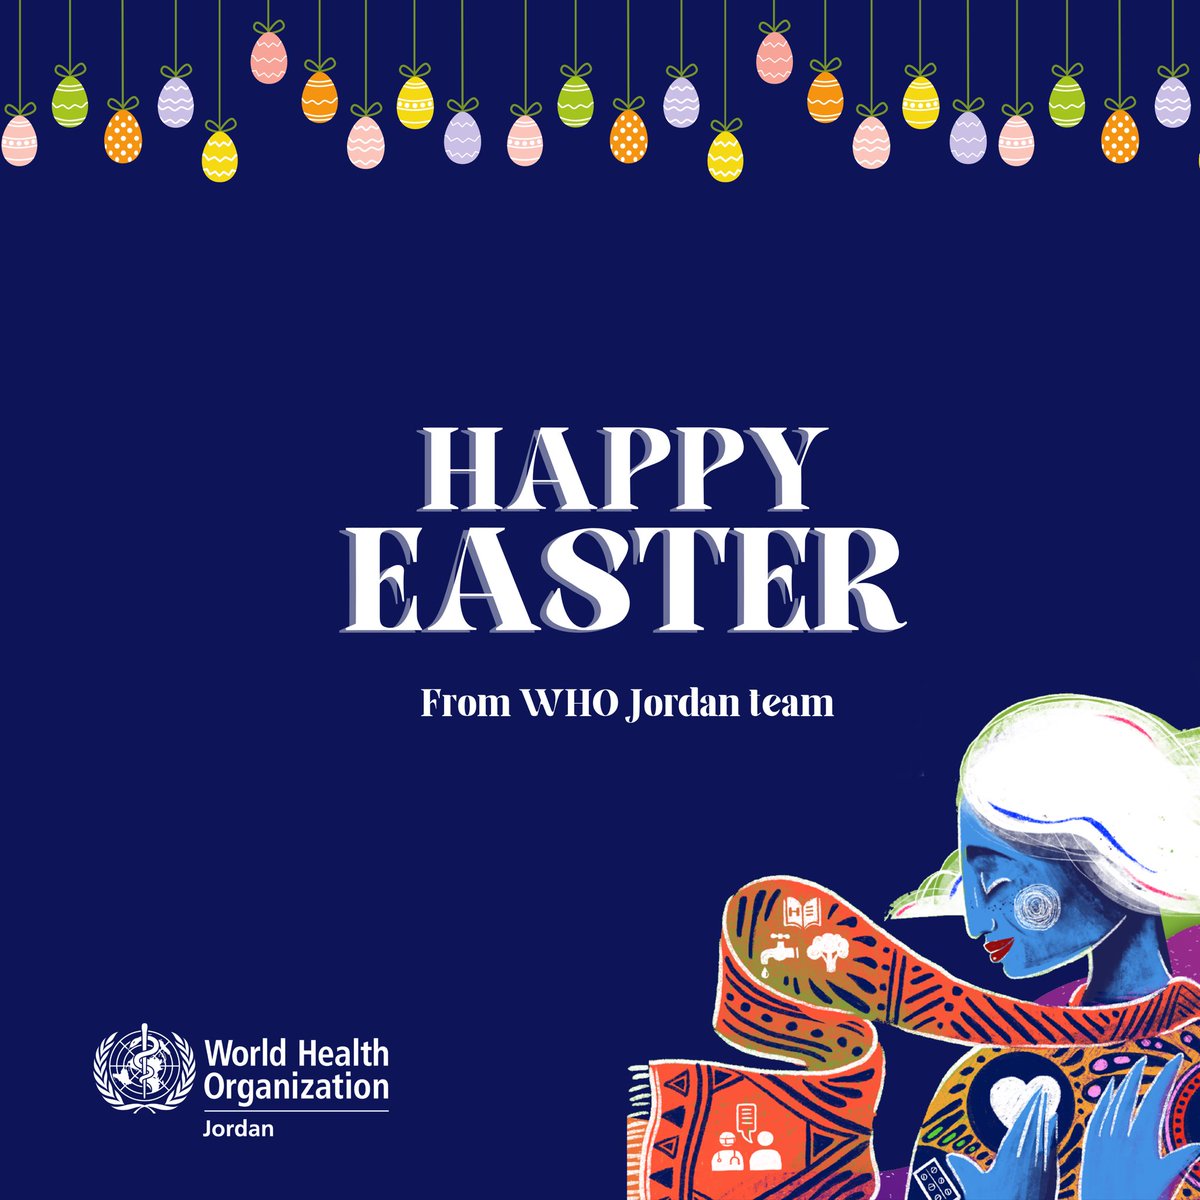 عيد فصح سعيد من فريق منظمة الصحة العالمية في الأردن. #عيد_الفصح Happy Easter from WHO Jordan team🐣 #HappyEaster #HealthForAll